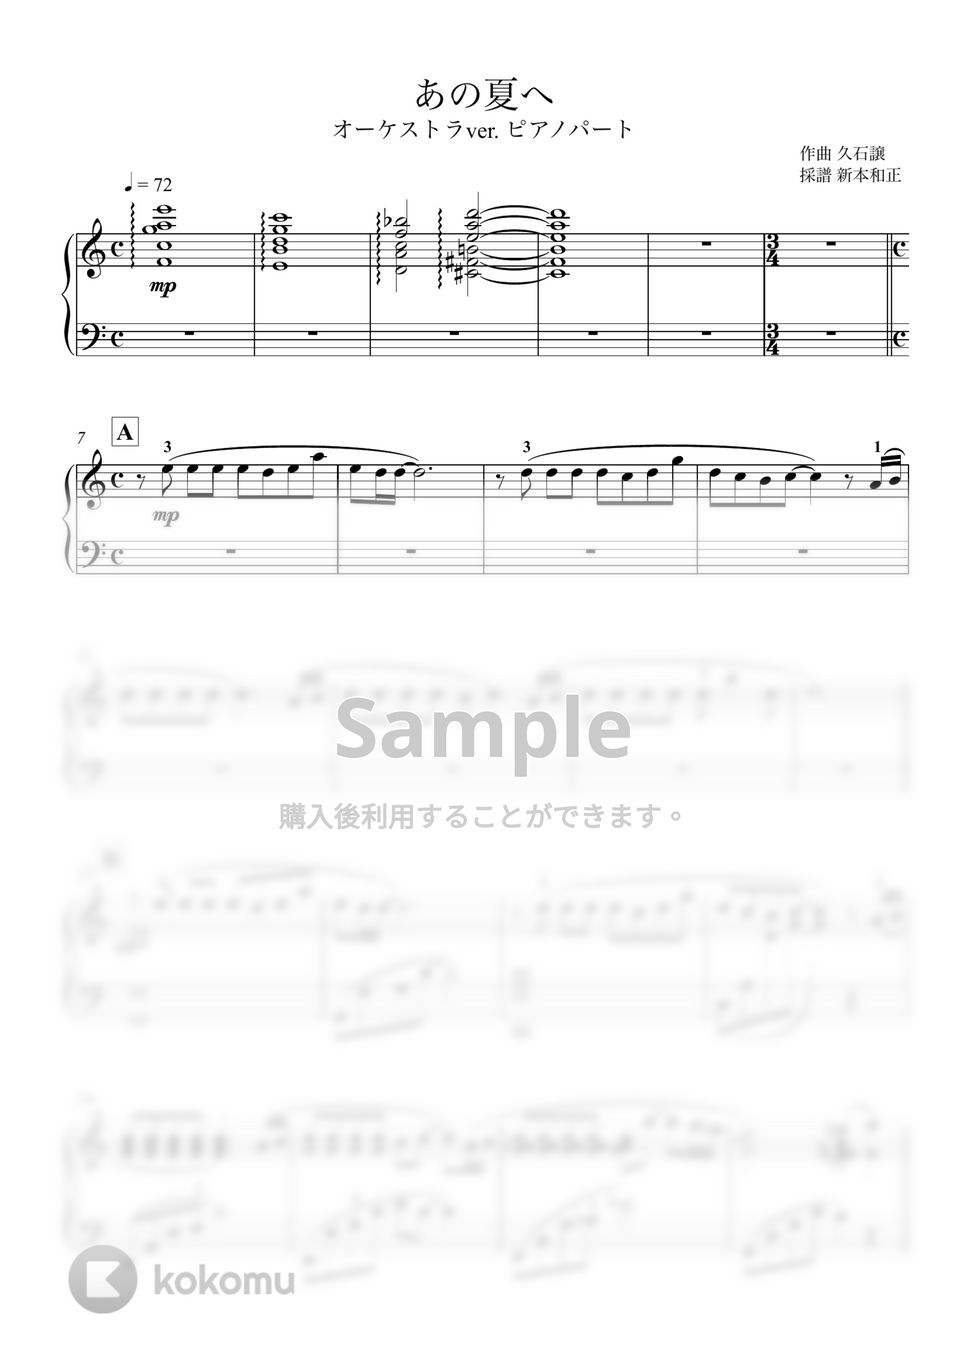 久石譲 - あの夏へ (ピアノパート譜) by 新本和正